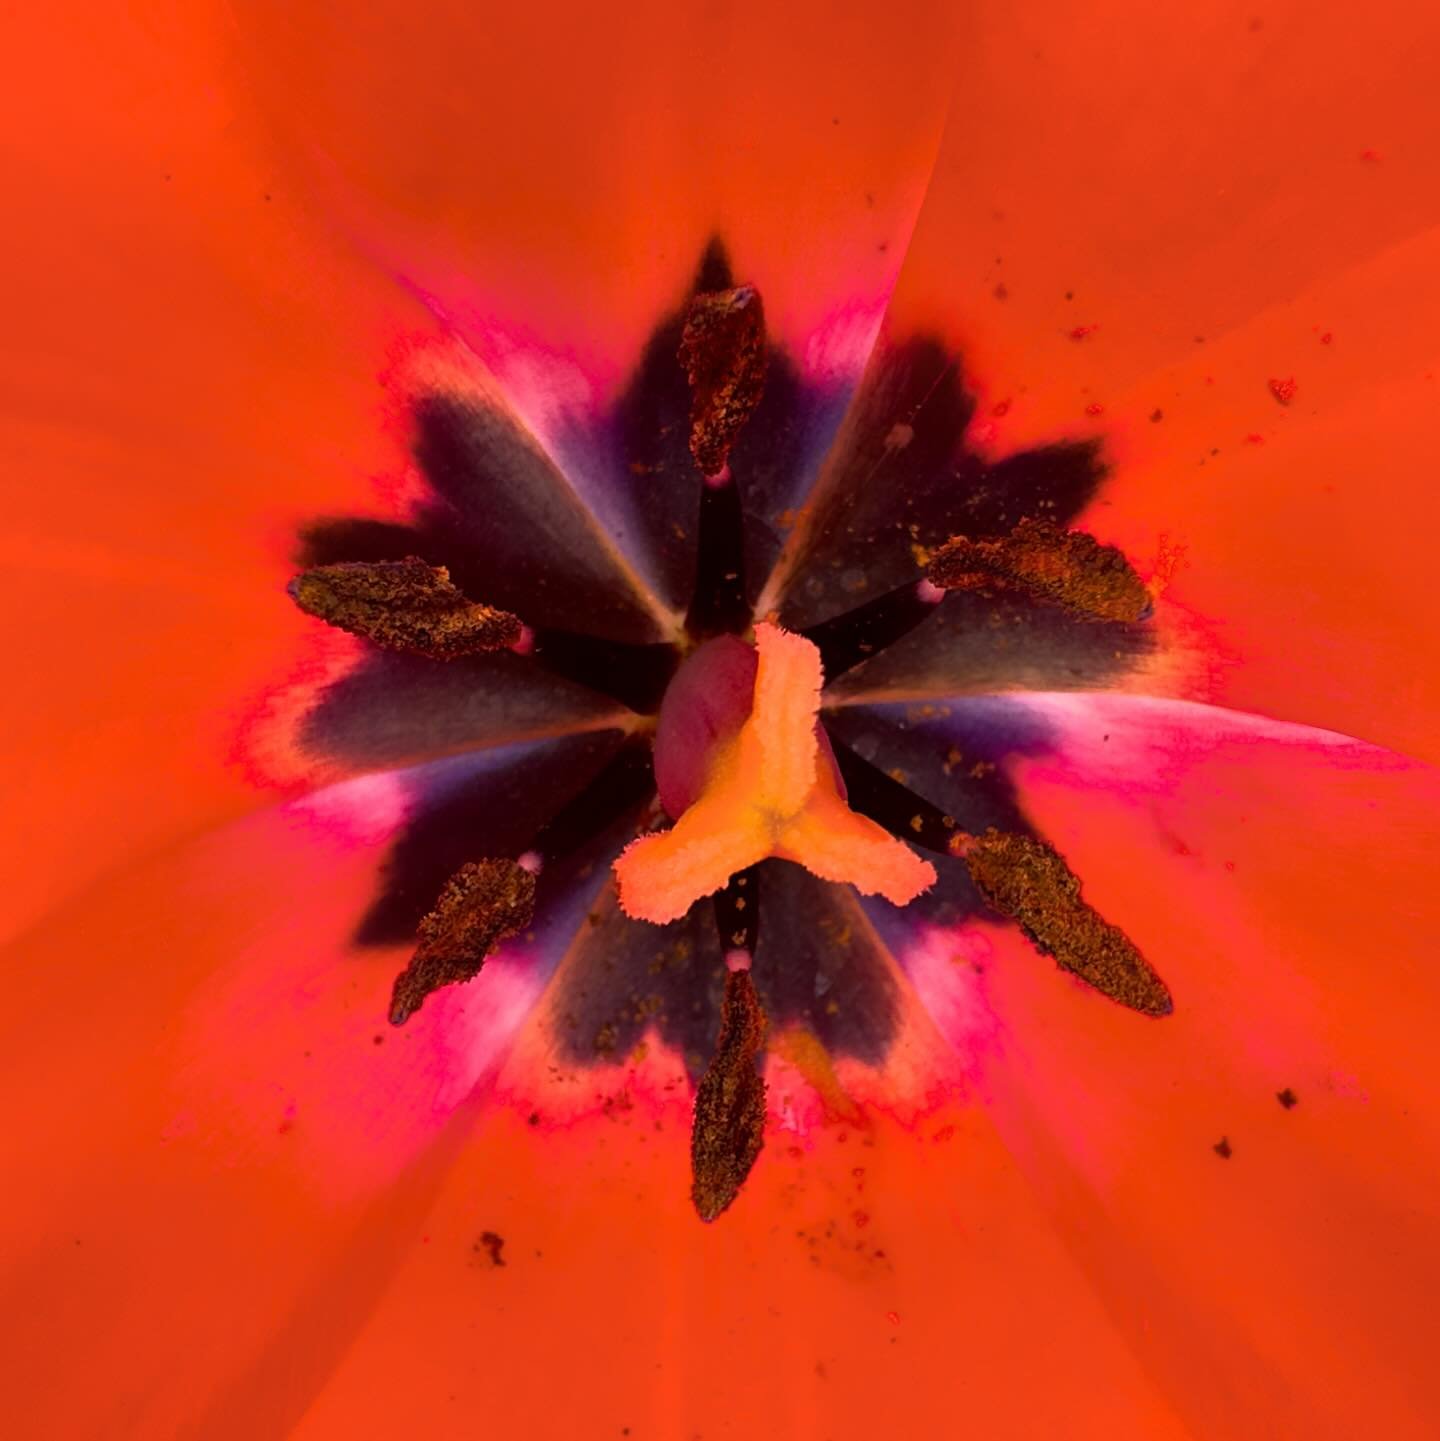 Macro of the inside of a tulip #iphonephotography #macrophotography #flowerphotography #flower #flowers #flowerphotography🌸 #tulips #tulip #pinktulip #springflower #instagood #exposureonestudios